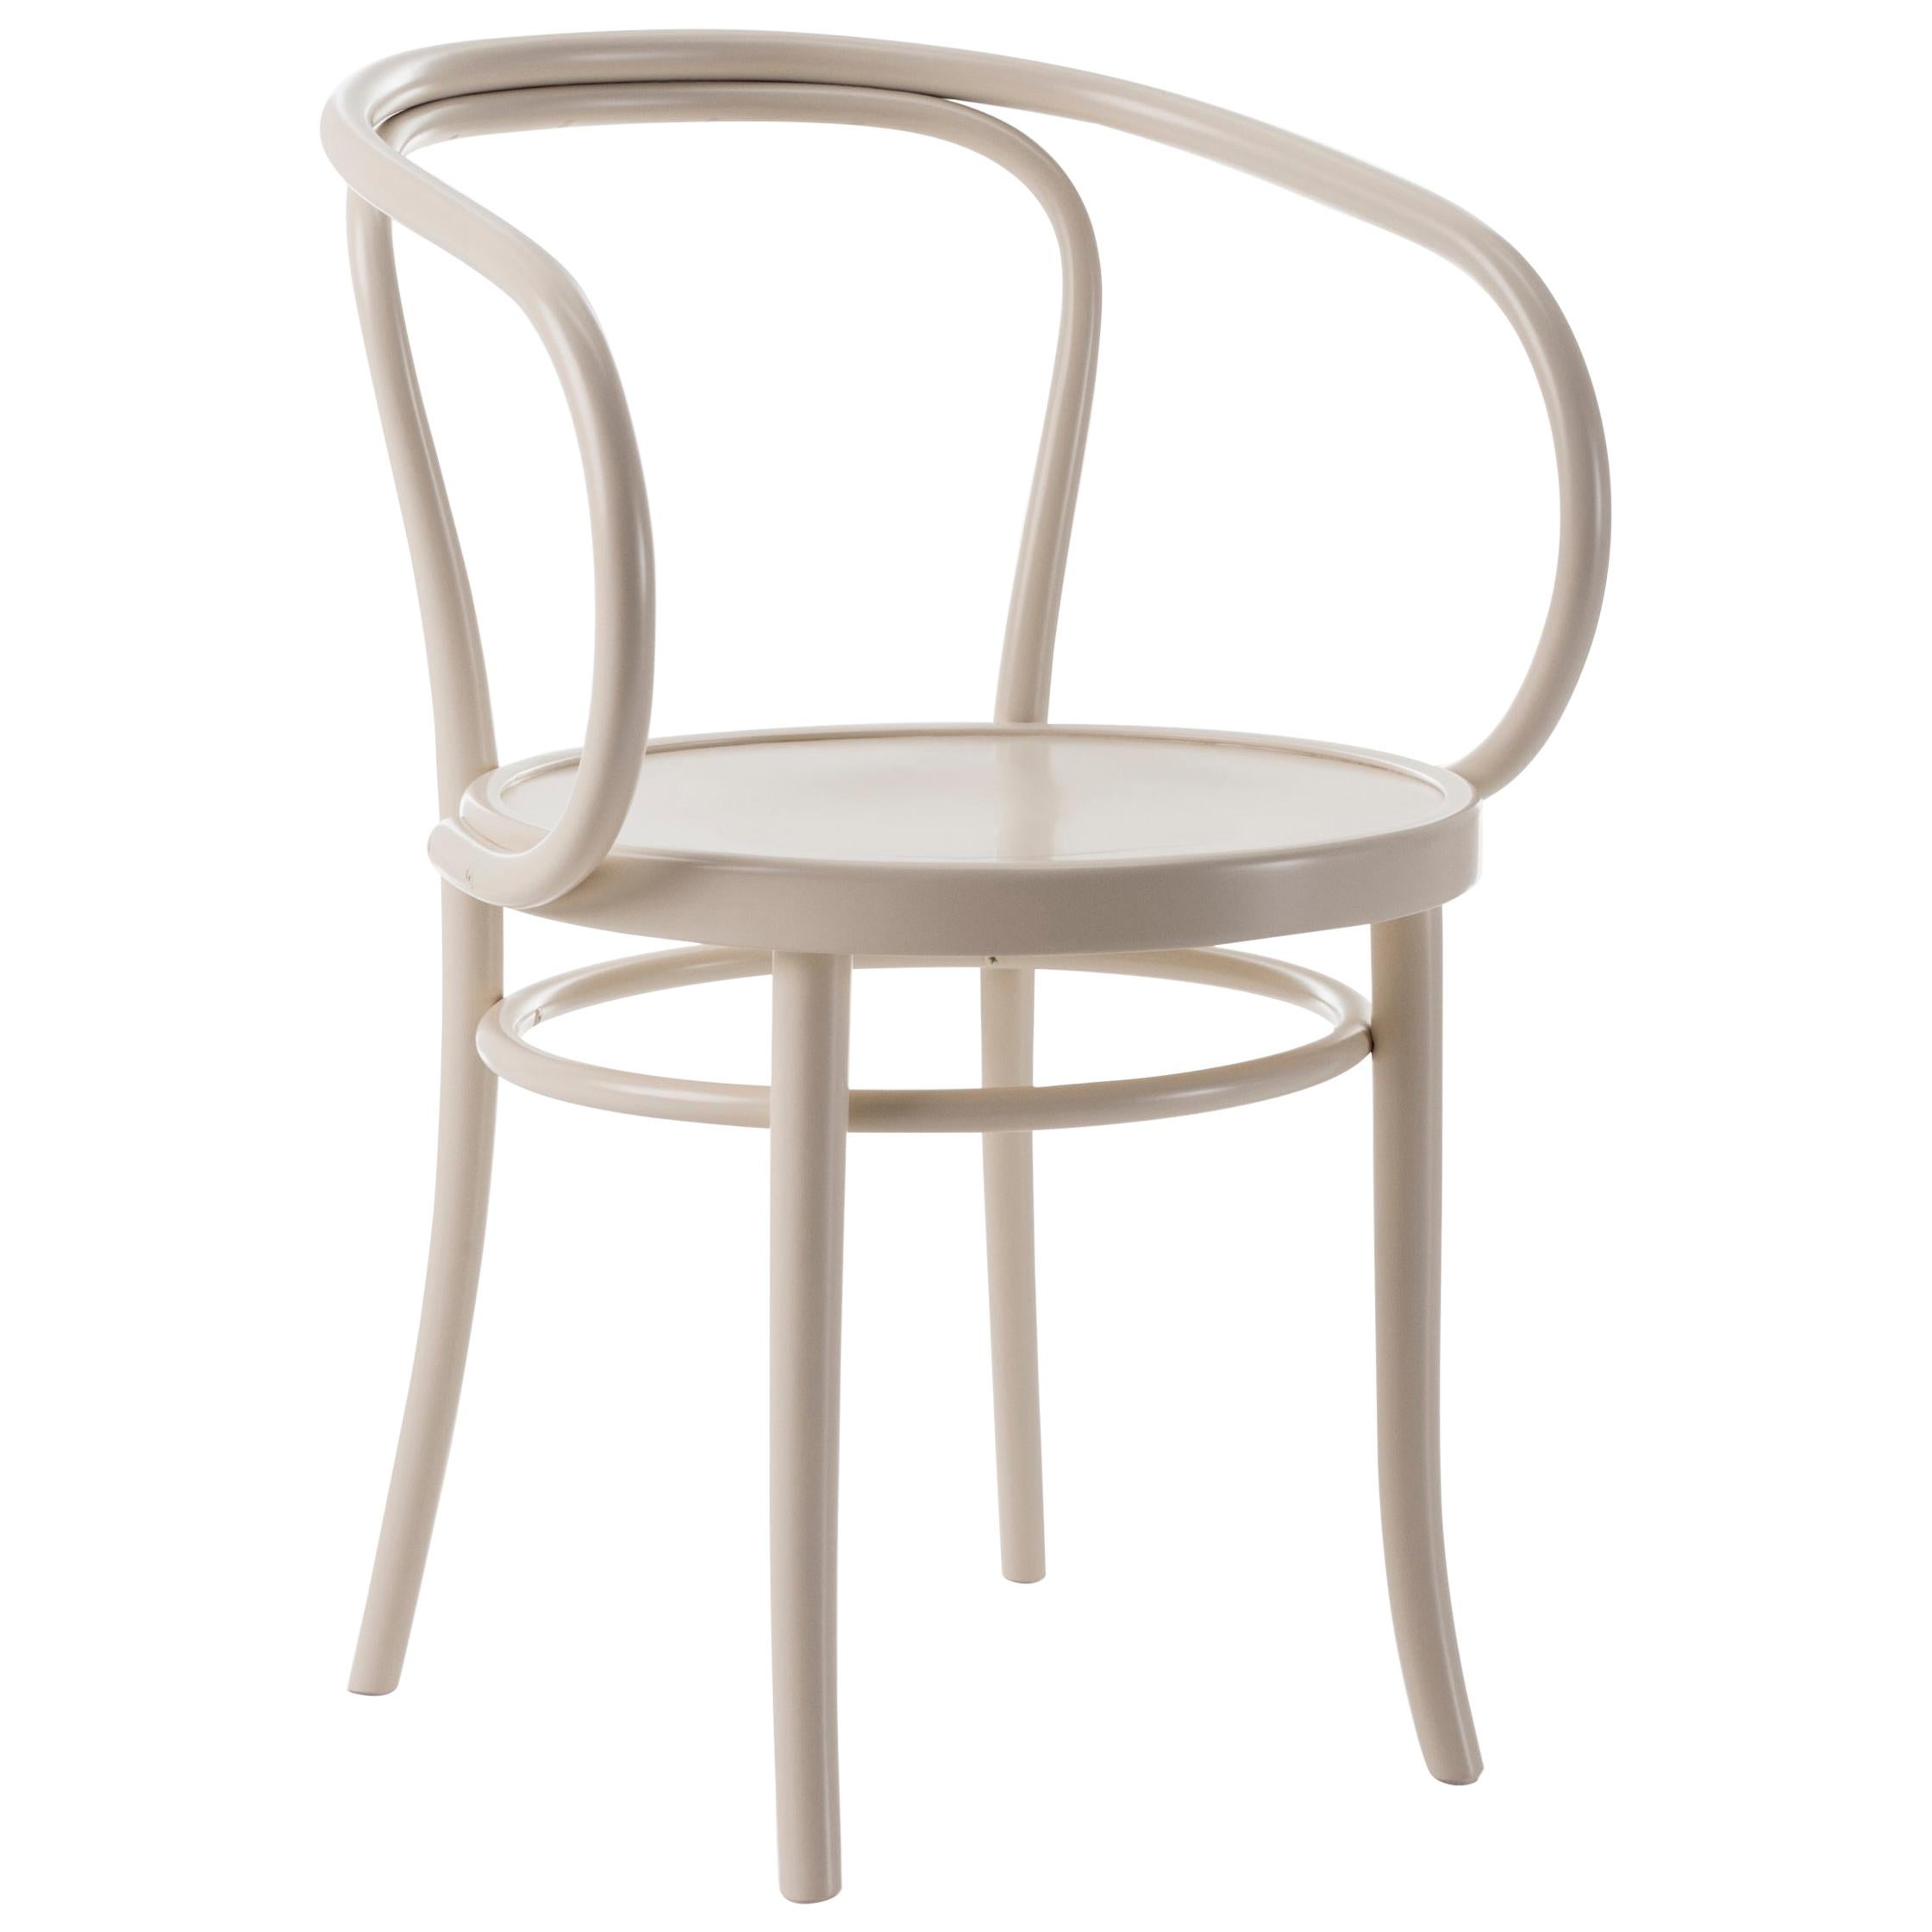 Gebrüder Thonet Vienna GmbH Wiener Stuhl Chair in Pure White For Sale